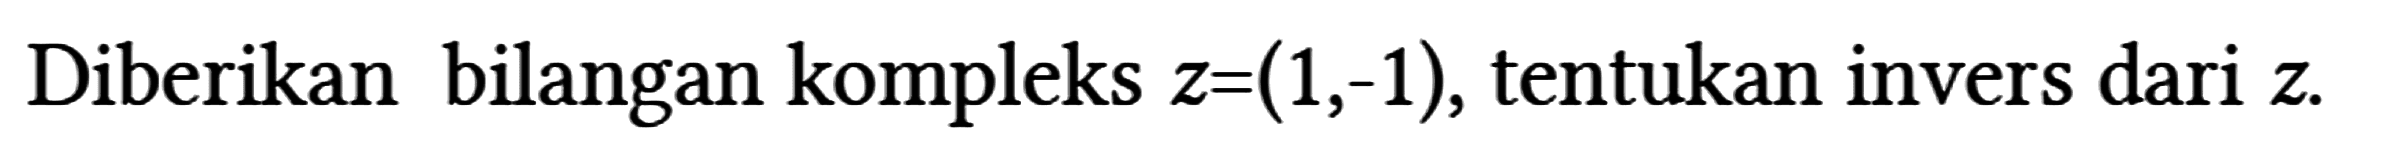 Diberikan bilangan kompleks z = (1,-1), tentukan invers dari z.